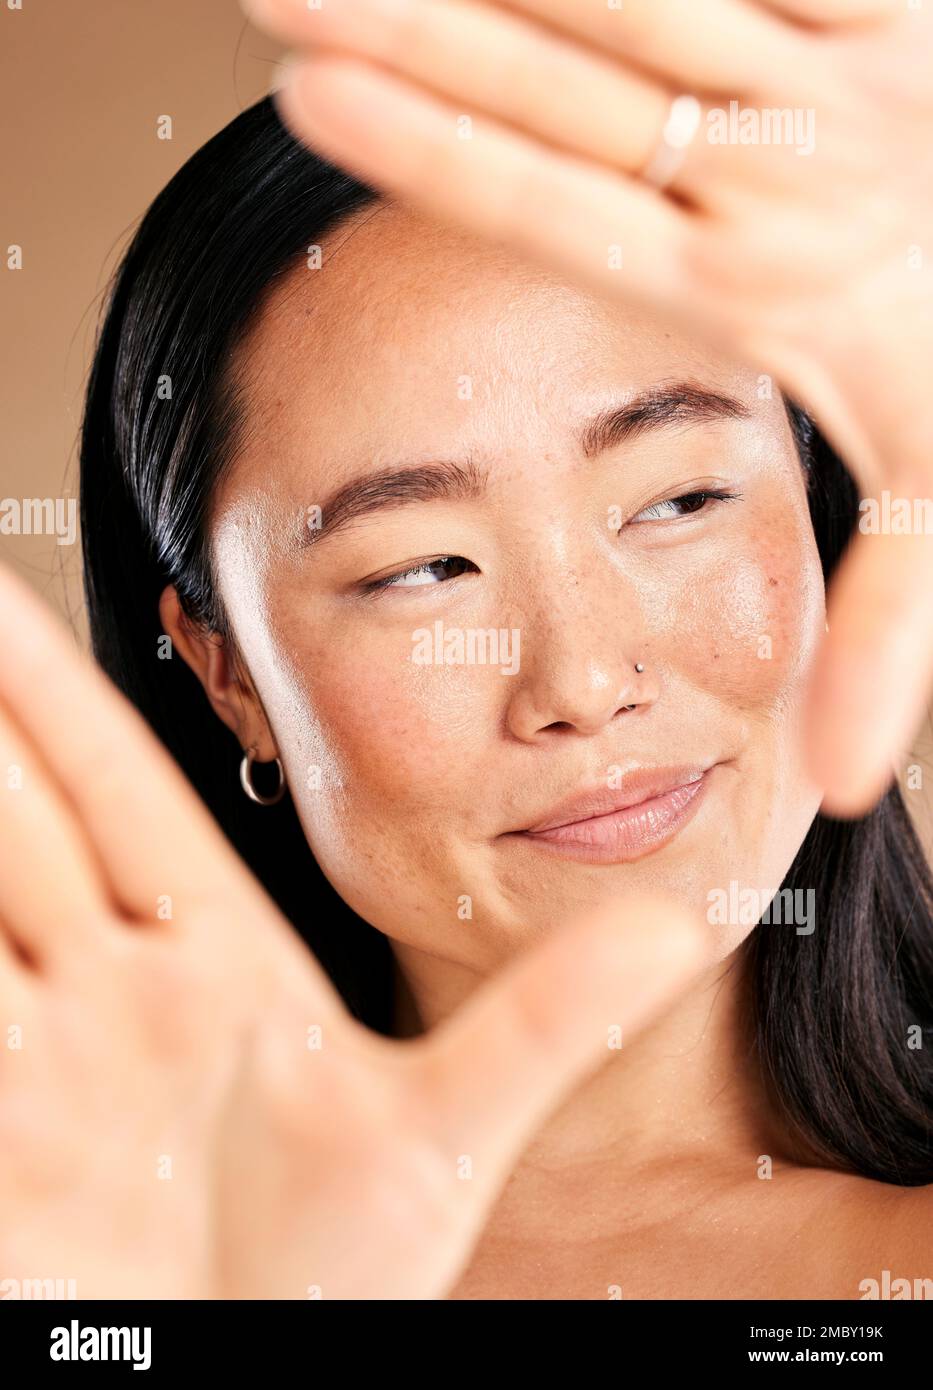 Asiatische Frau, Handrahmen und Studio für Hautpflege, natürliches Hautglühen und Lächeln mit Kosmetik für die Gesundheit. Japanisches Modell, kosmetische Schönheit und gesund Stockfoto